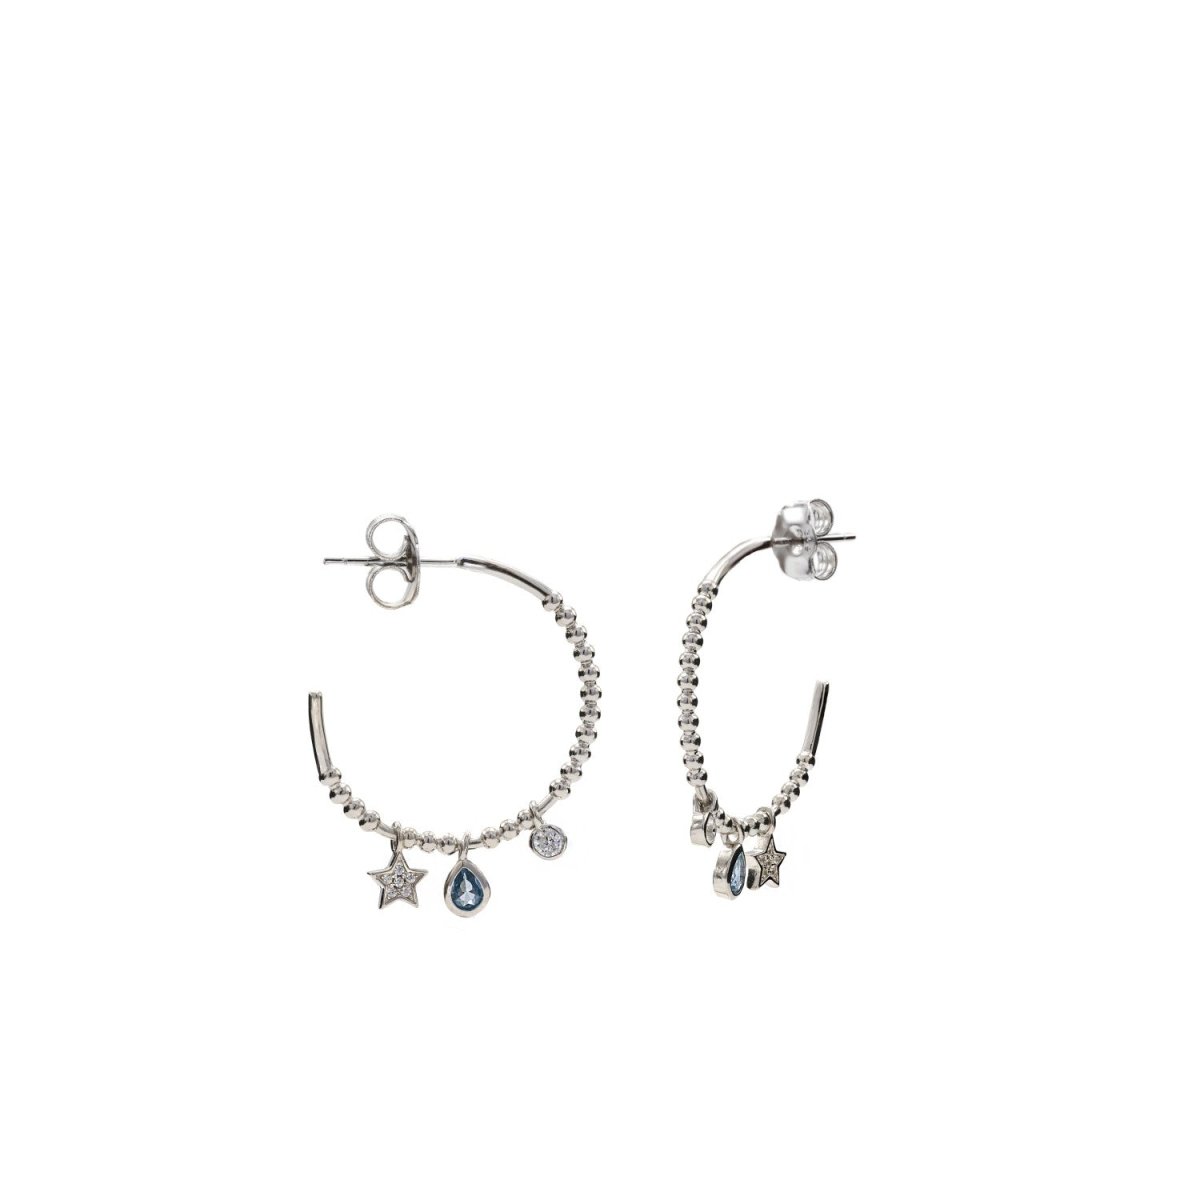 Earrings - Hoop earrings with teardrop and round moon motif pendants